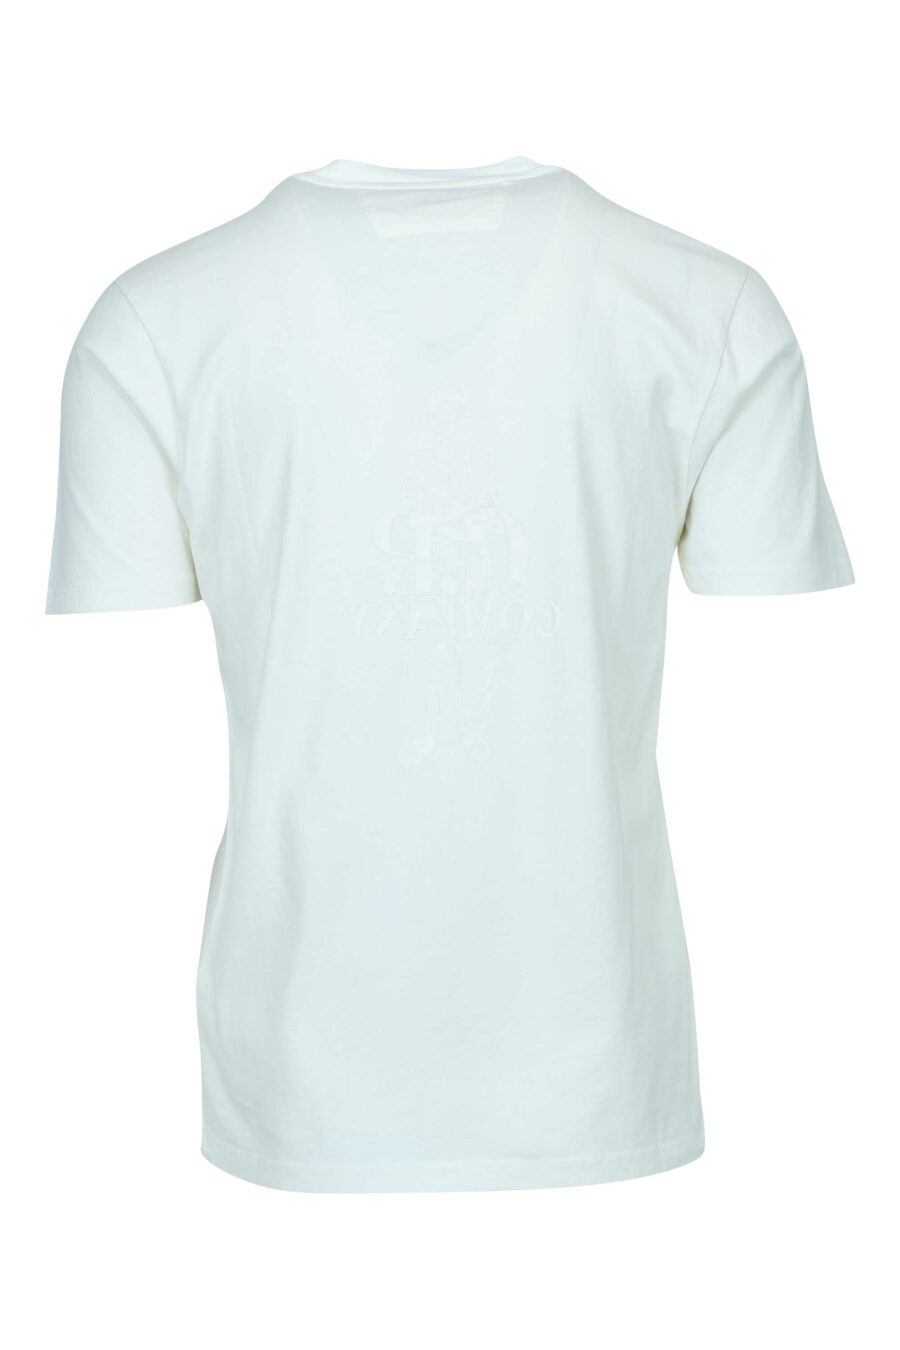 Camiseta blanca con maxilogo marinero y logo "cp" - 7620943776478 1